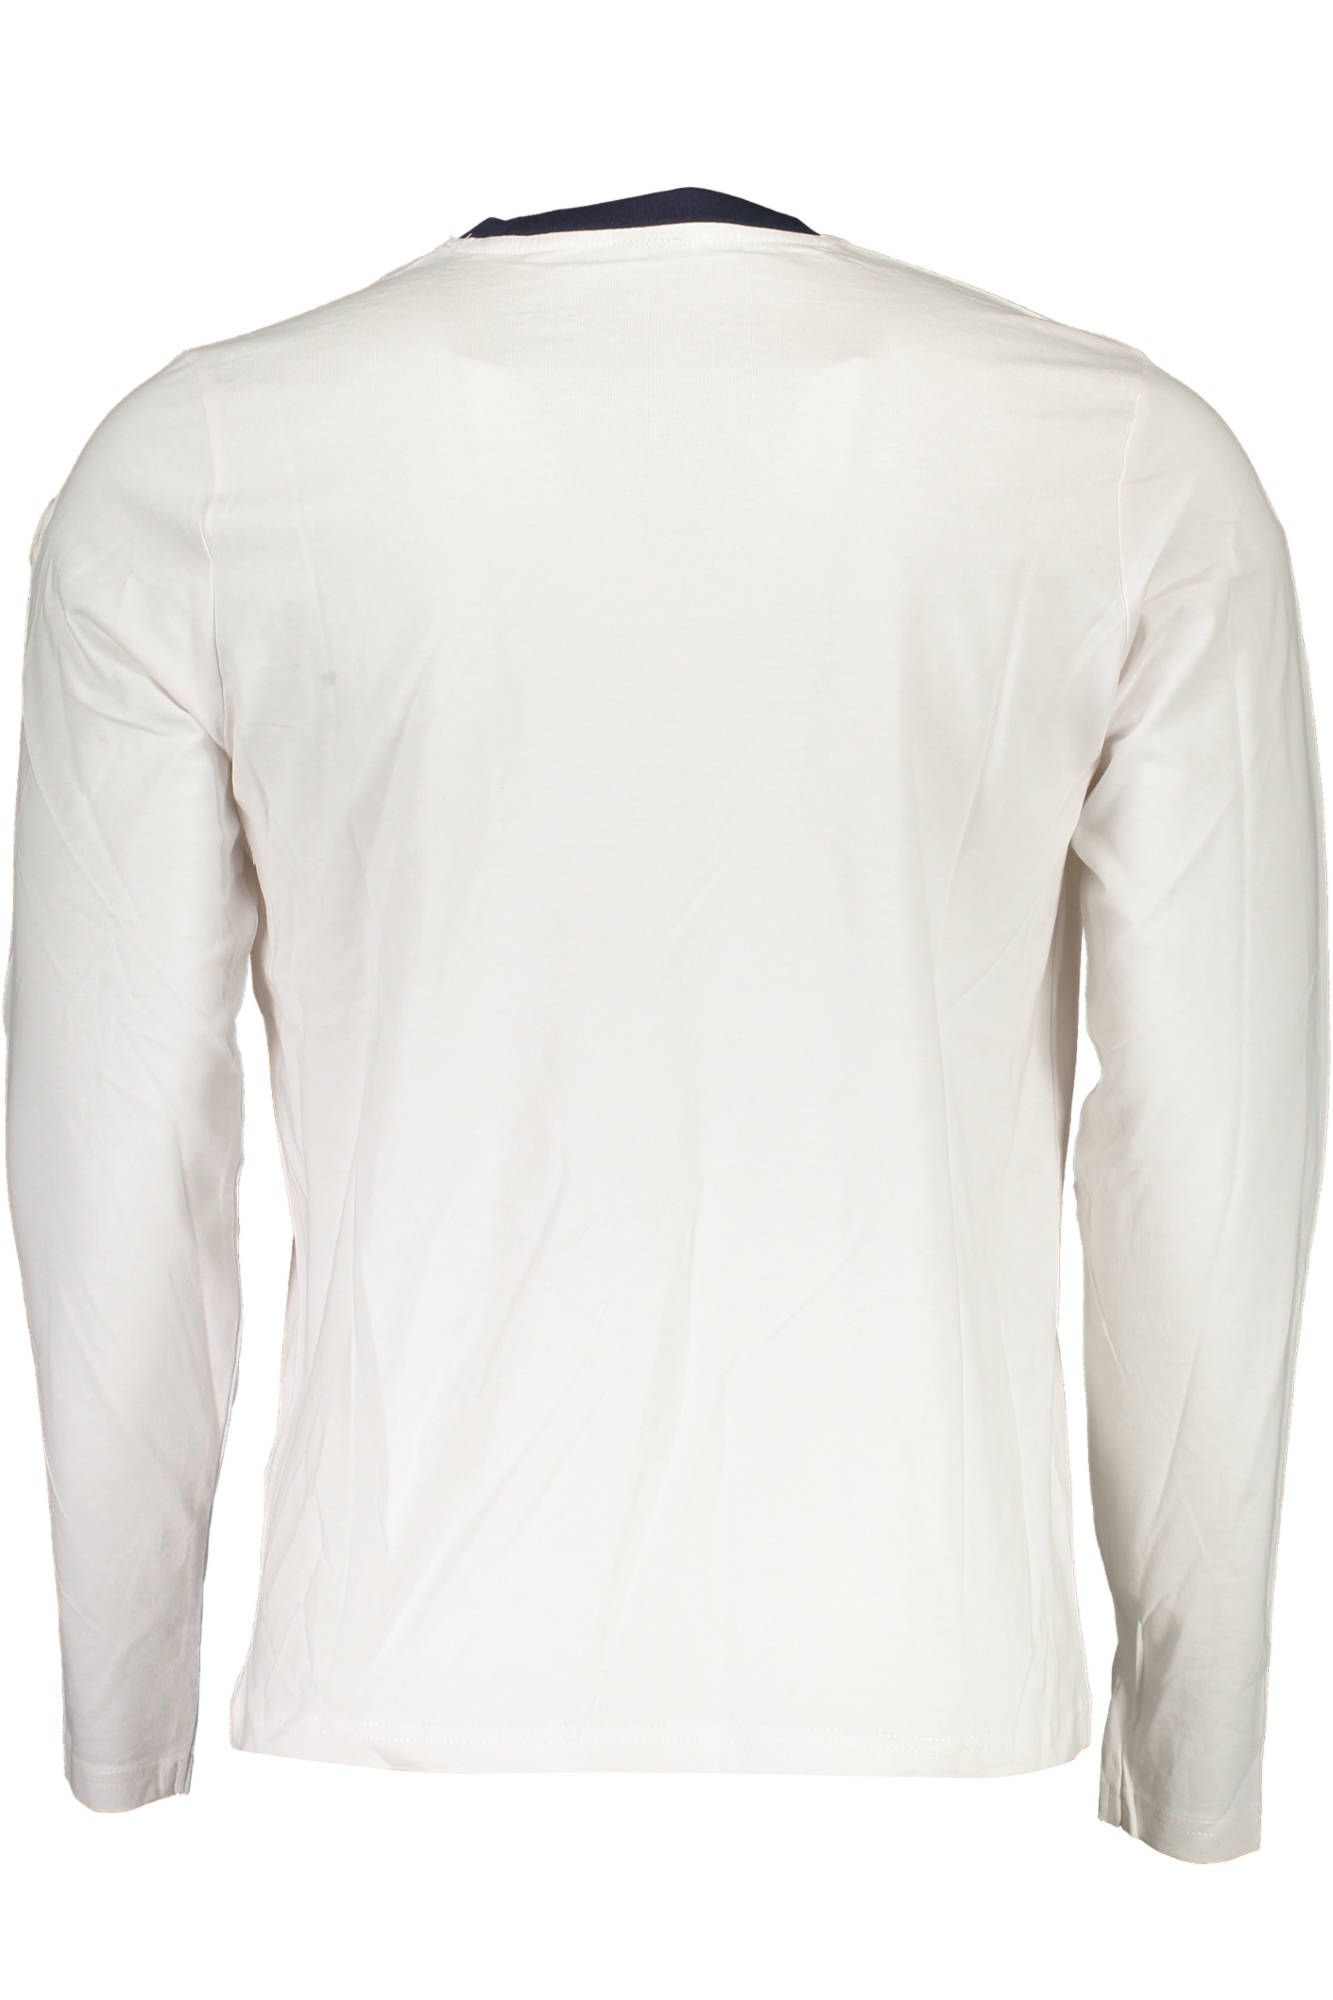 Elegant Long Sleeve Round Neck T-Shirt